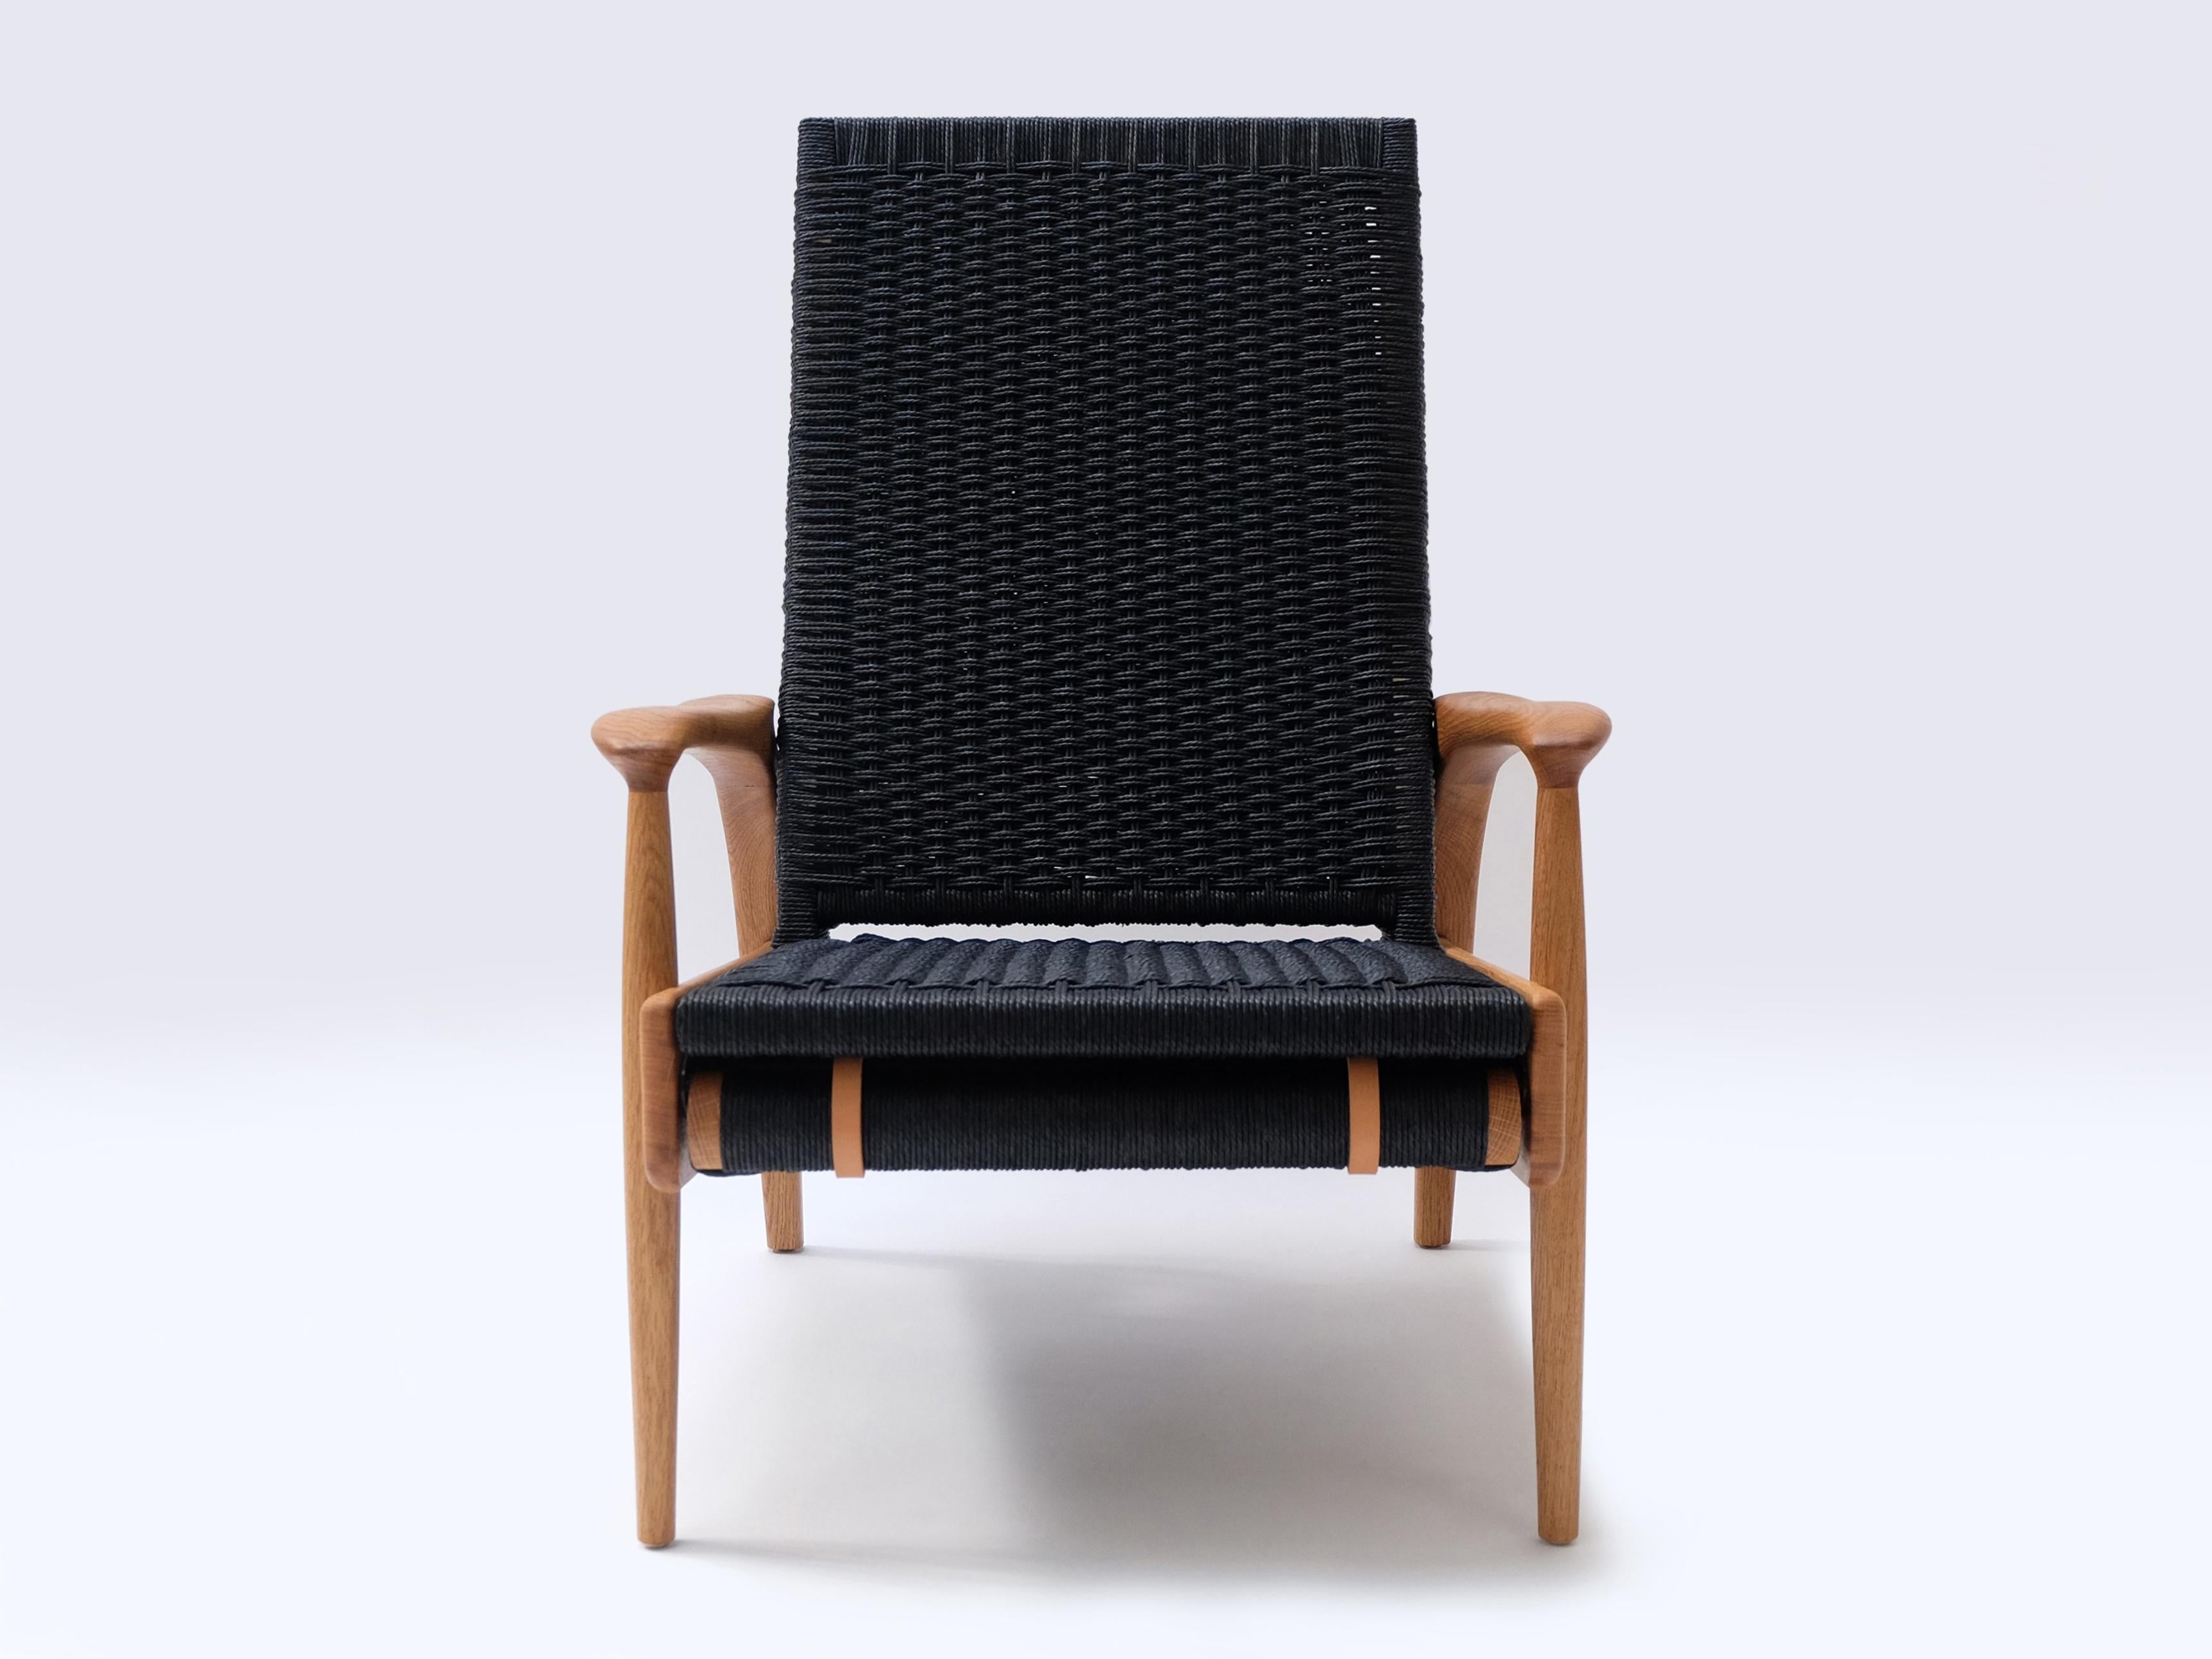 Paire de chaises longues écologiques inclinables FENDRIK fabriquées à la main et sur mesure par Studio180degree
Représenté en chêne massif huilé naturel durable et cordon danois noir original contrasté.

Noble - Tactile - Raffiné - Durable
Chaise